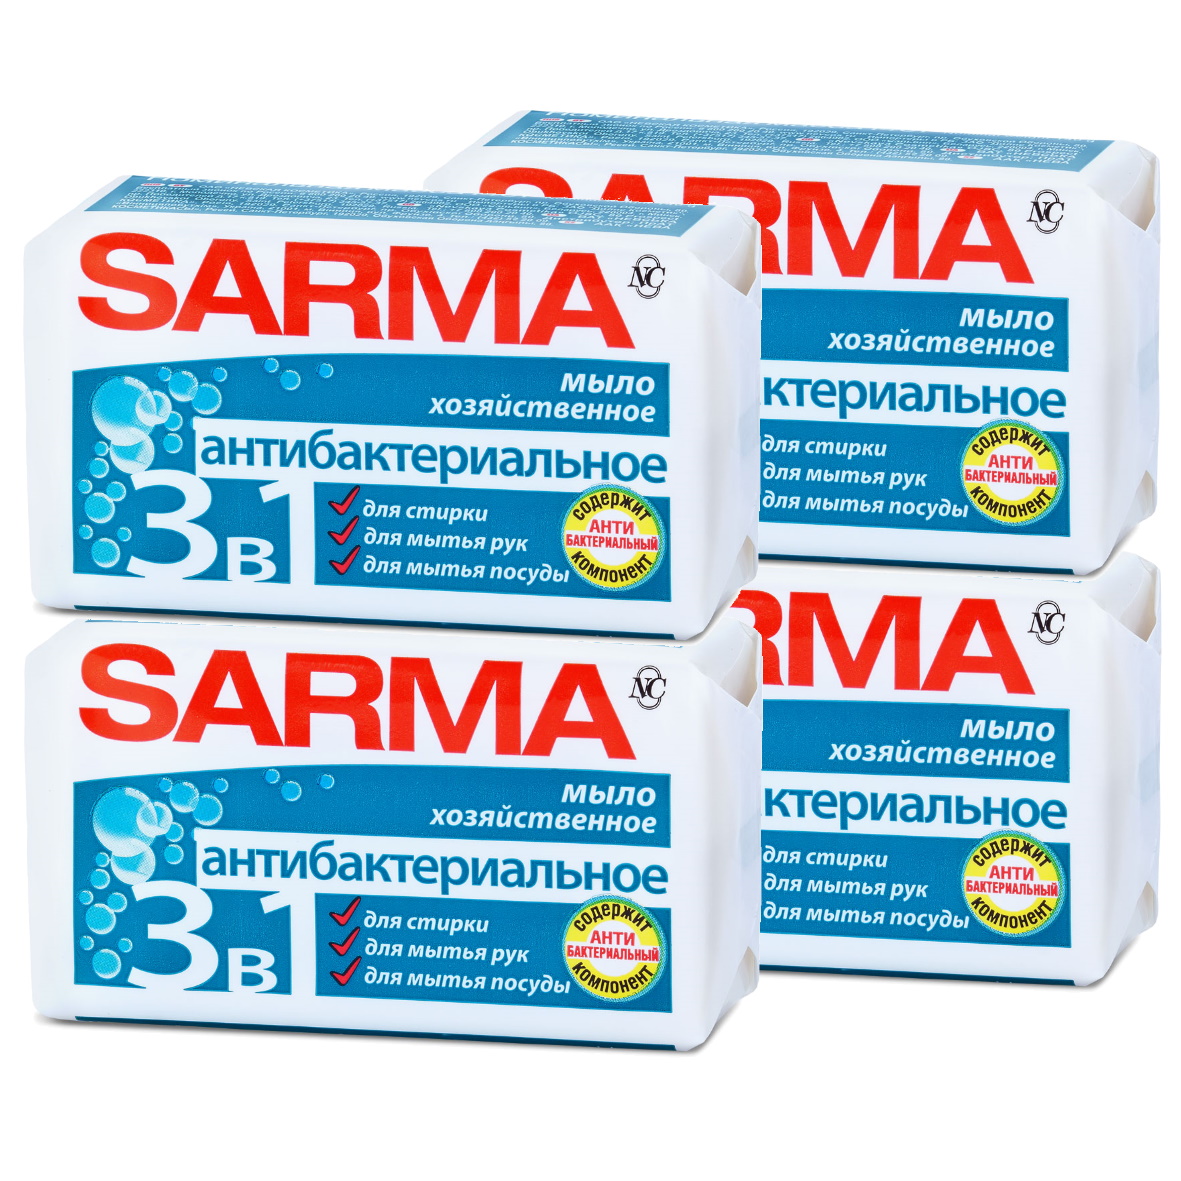 фото Хозяйственное мыло sarma антибактериальное 140г (набор из 4 штук)